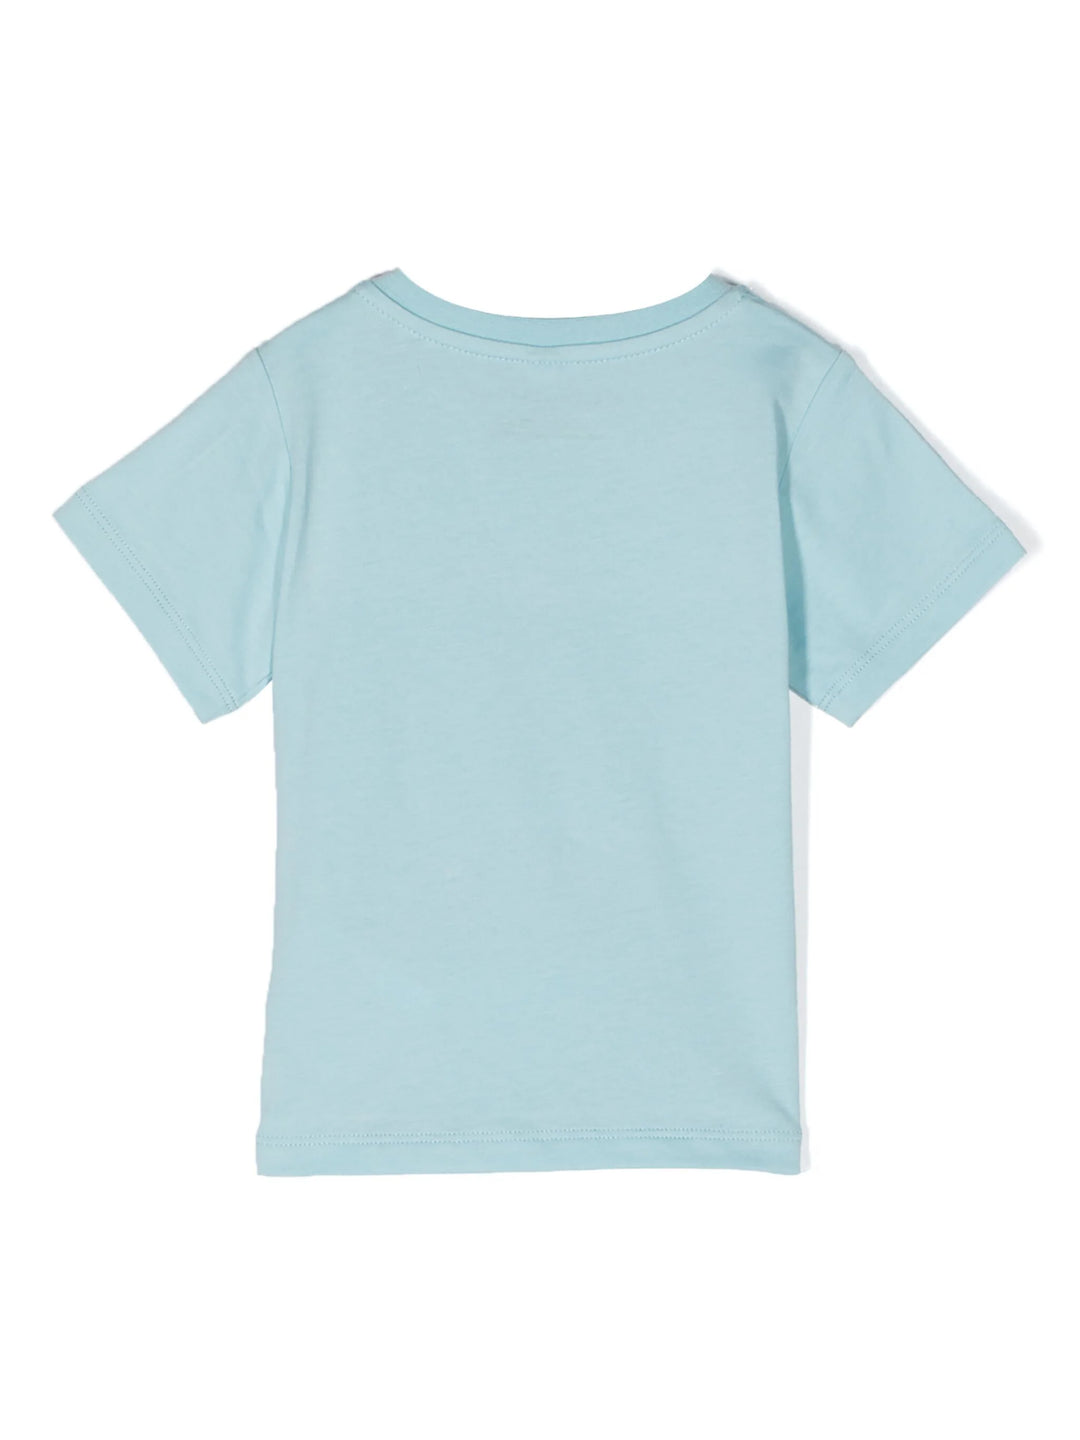 T-shirt tiffany neonato